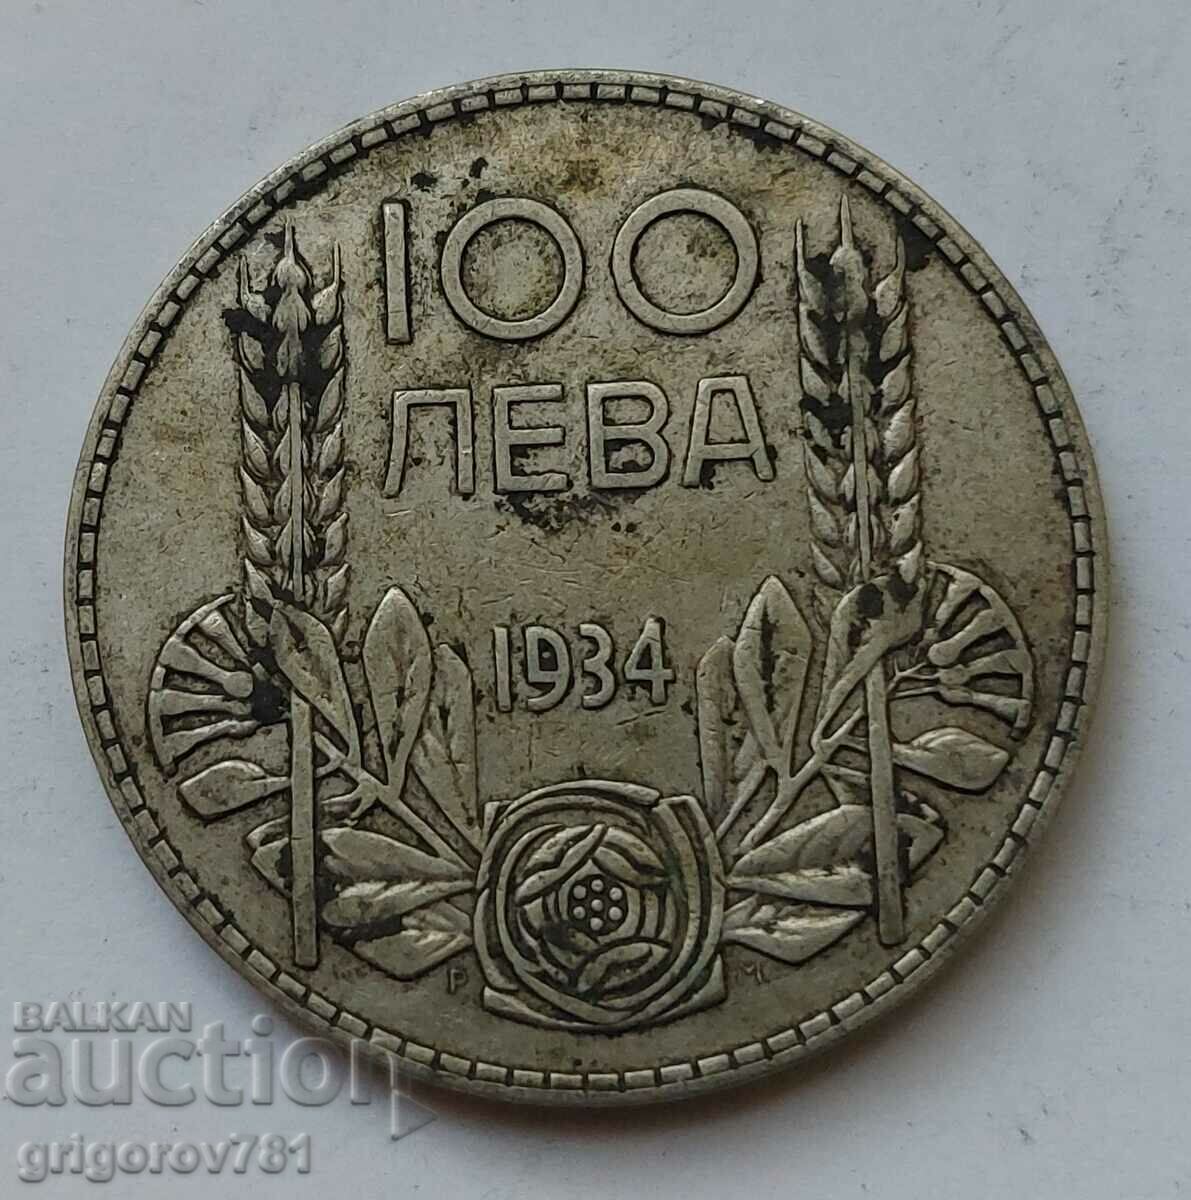 100 leva silver Bulgaria 1934 - silver coin #53